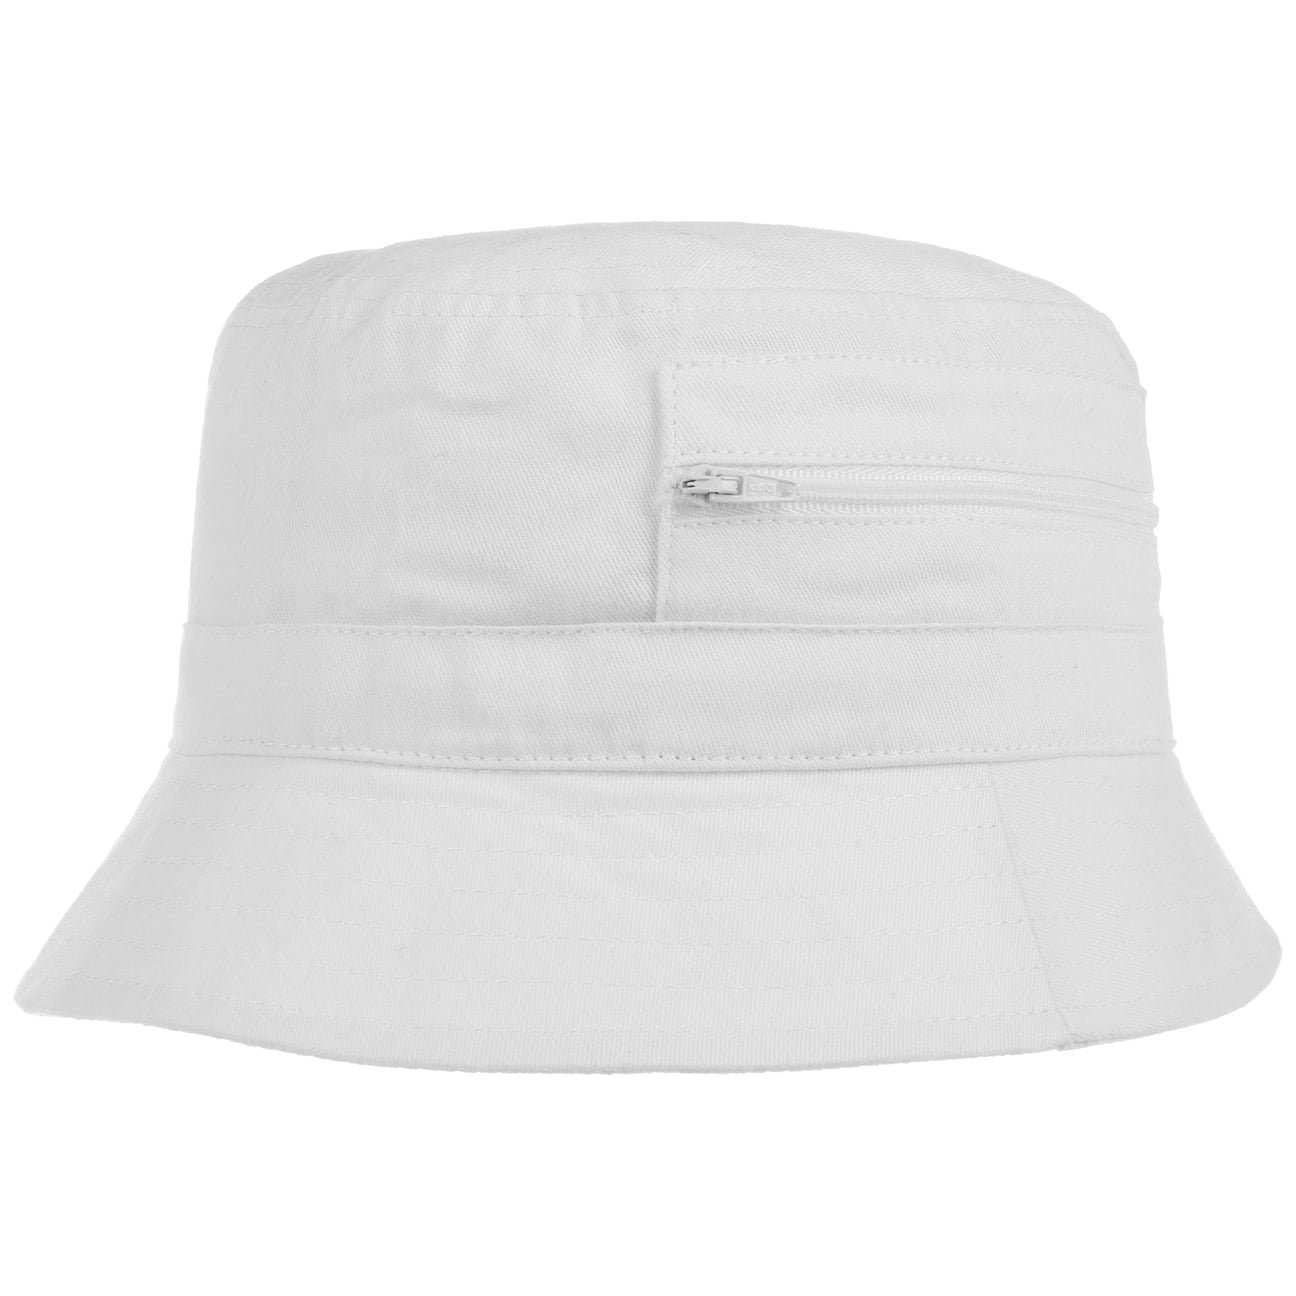 Lipodo Fischerhut Damen/Herren Anglerhut mit eingenähter Tasche Aus Baumwolle - Sommerhut als Sonnenschutz Farben blau Oliv weiß Reißverschluss 